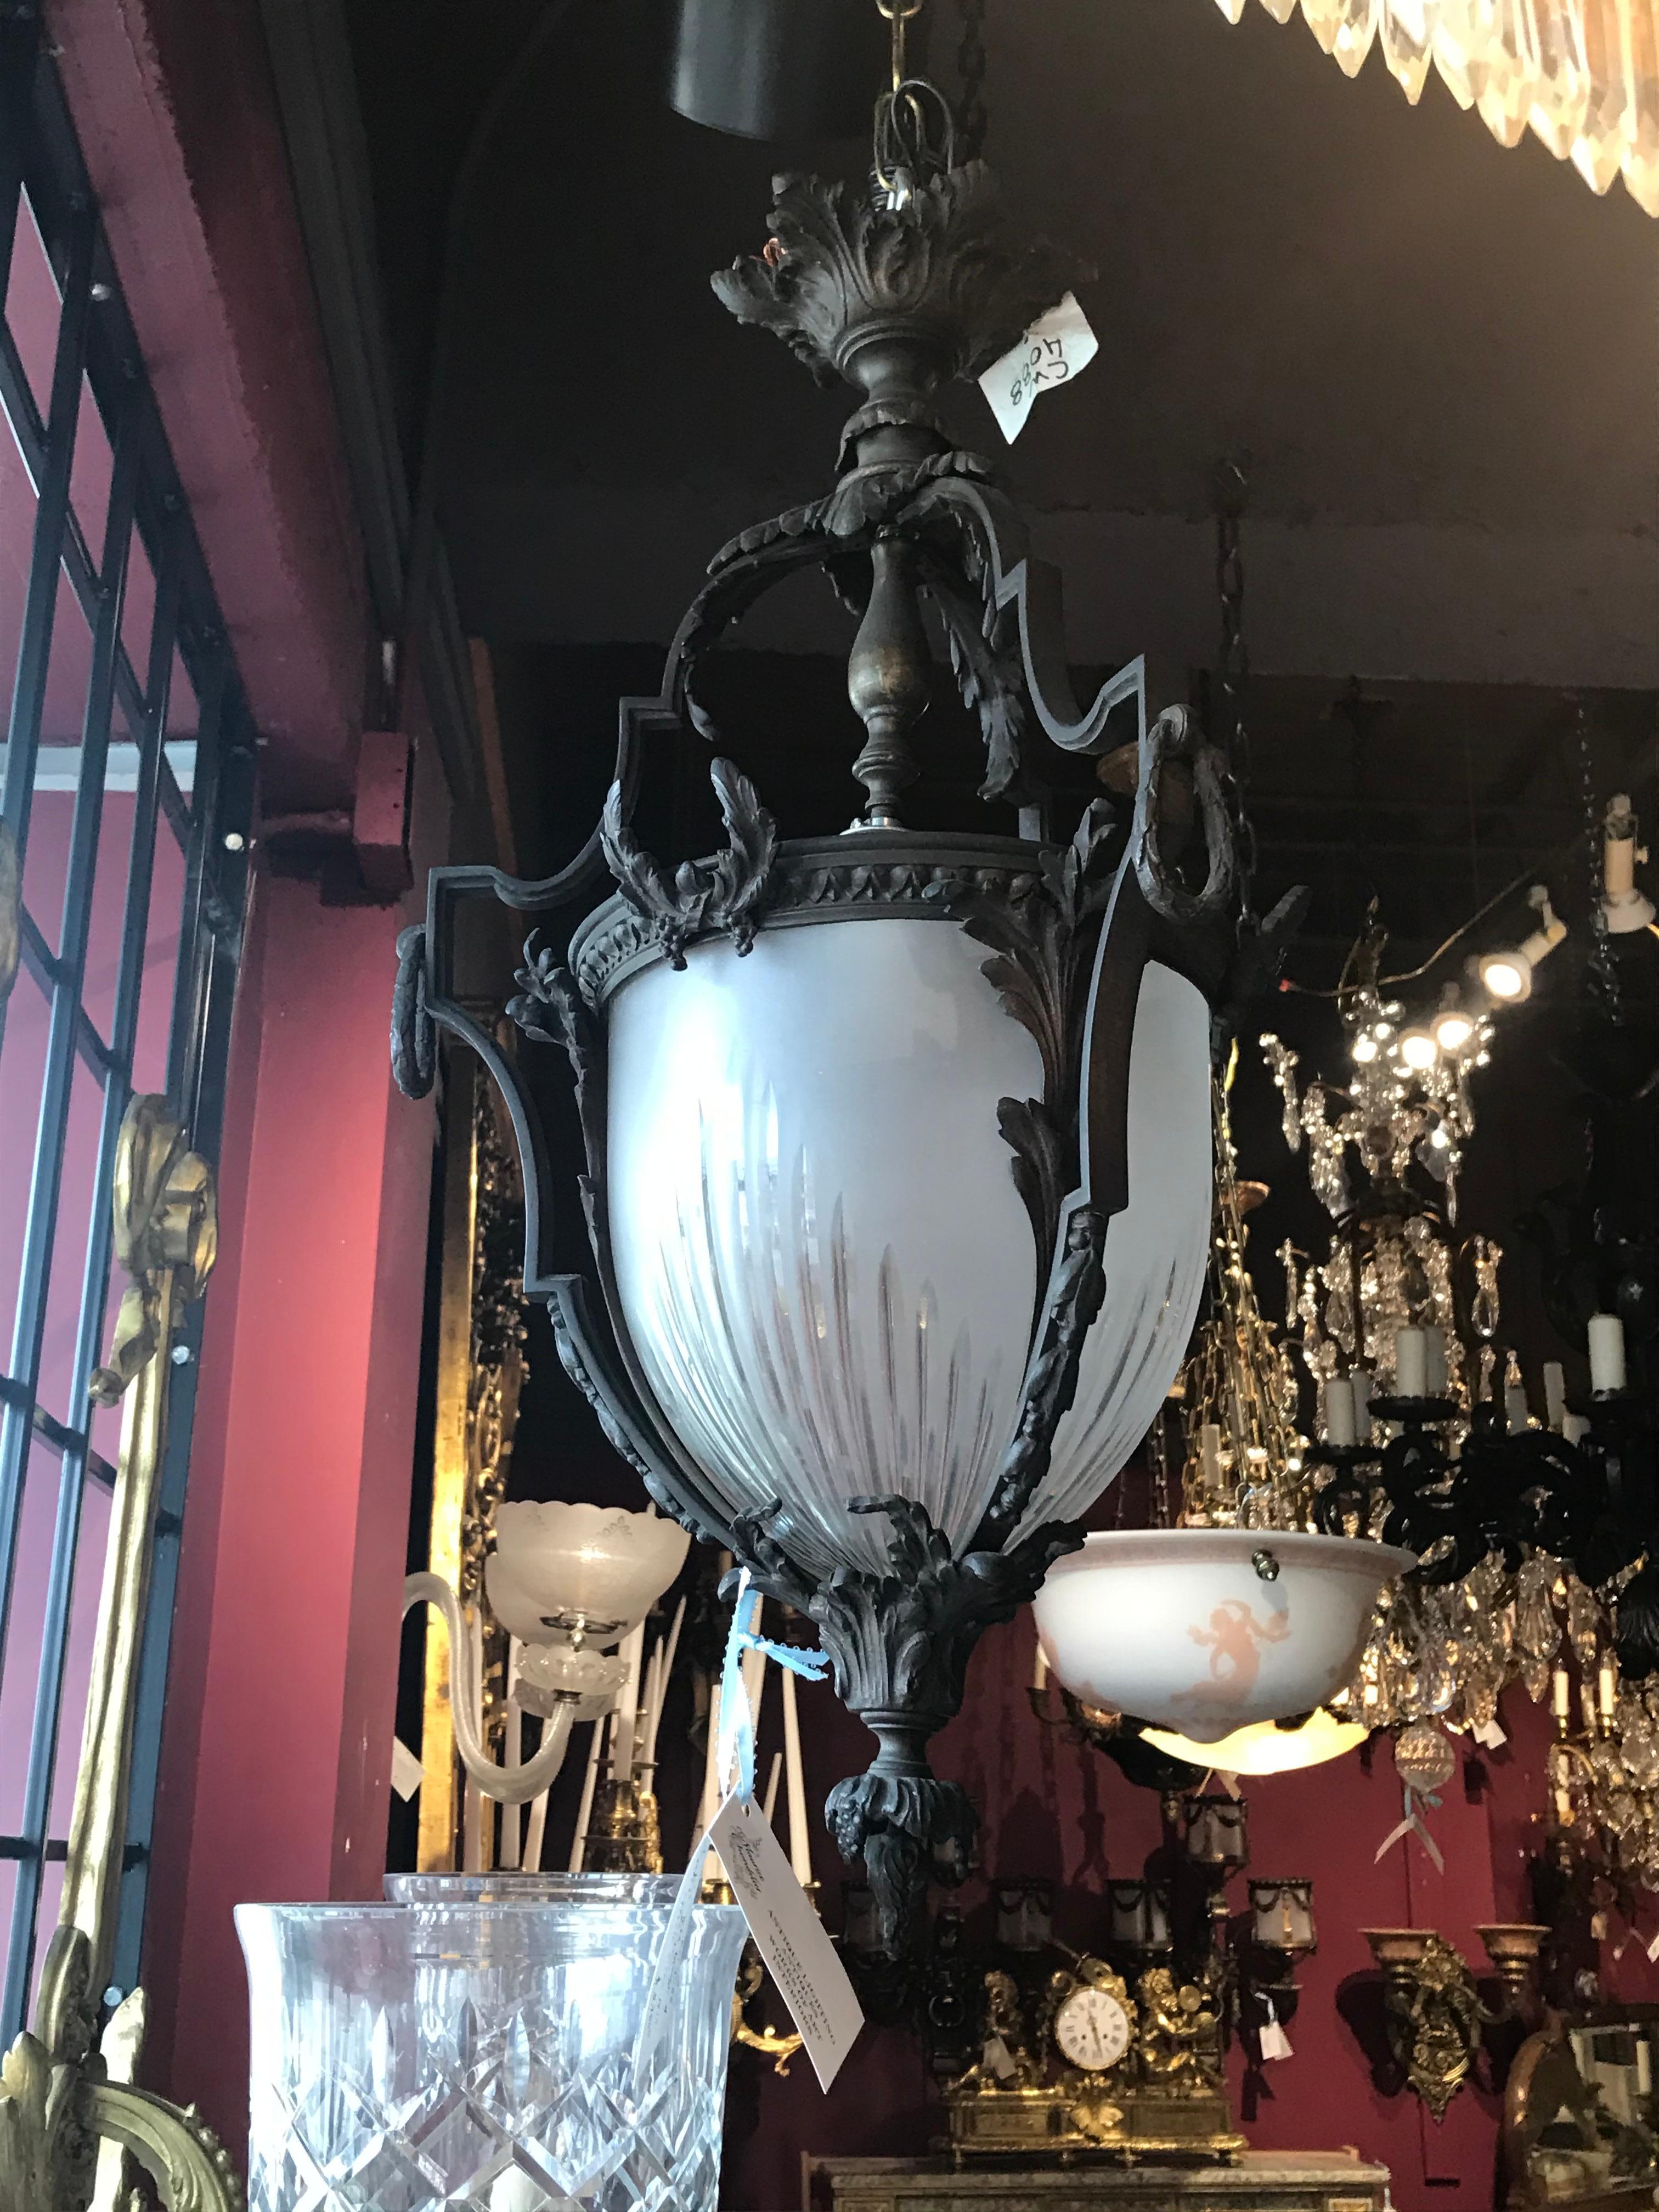 Une très belle et élégante lanterne en bronze avec un dôme en cristal taillé à la main.
France, vers 1910. 1 lumière
Dimensions : Hauteur 25